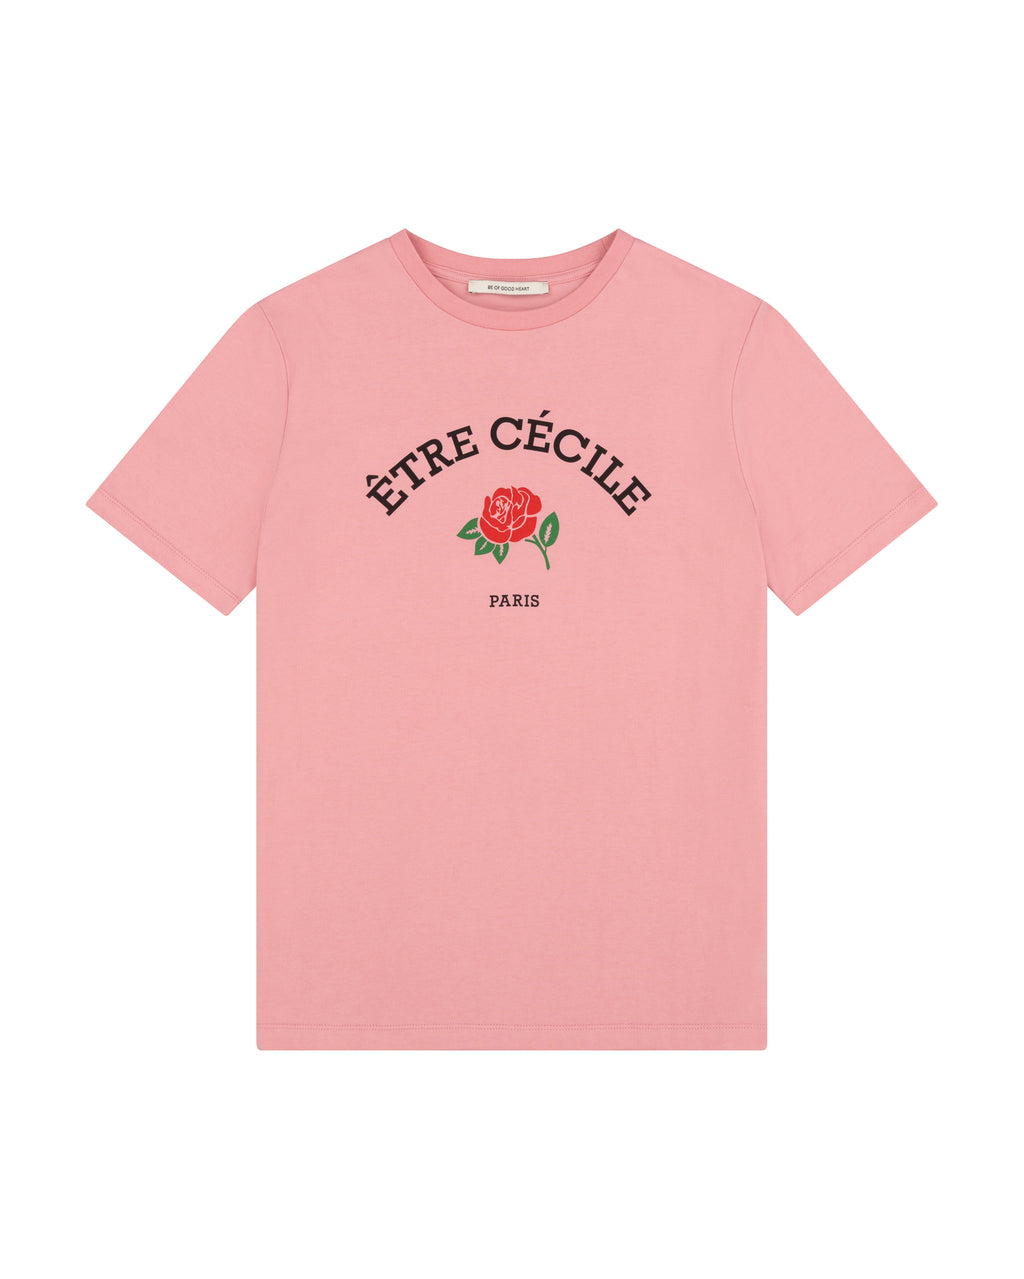 Cécile Cecile Être - Etre Classic T-Shirt Rose